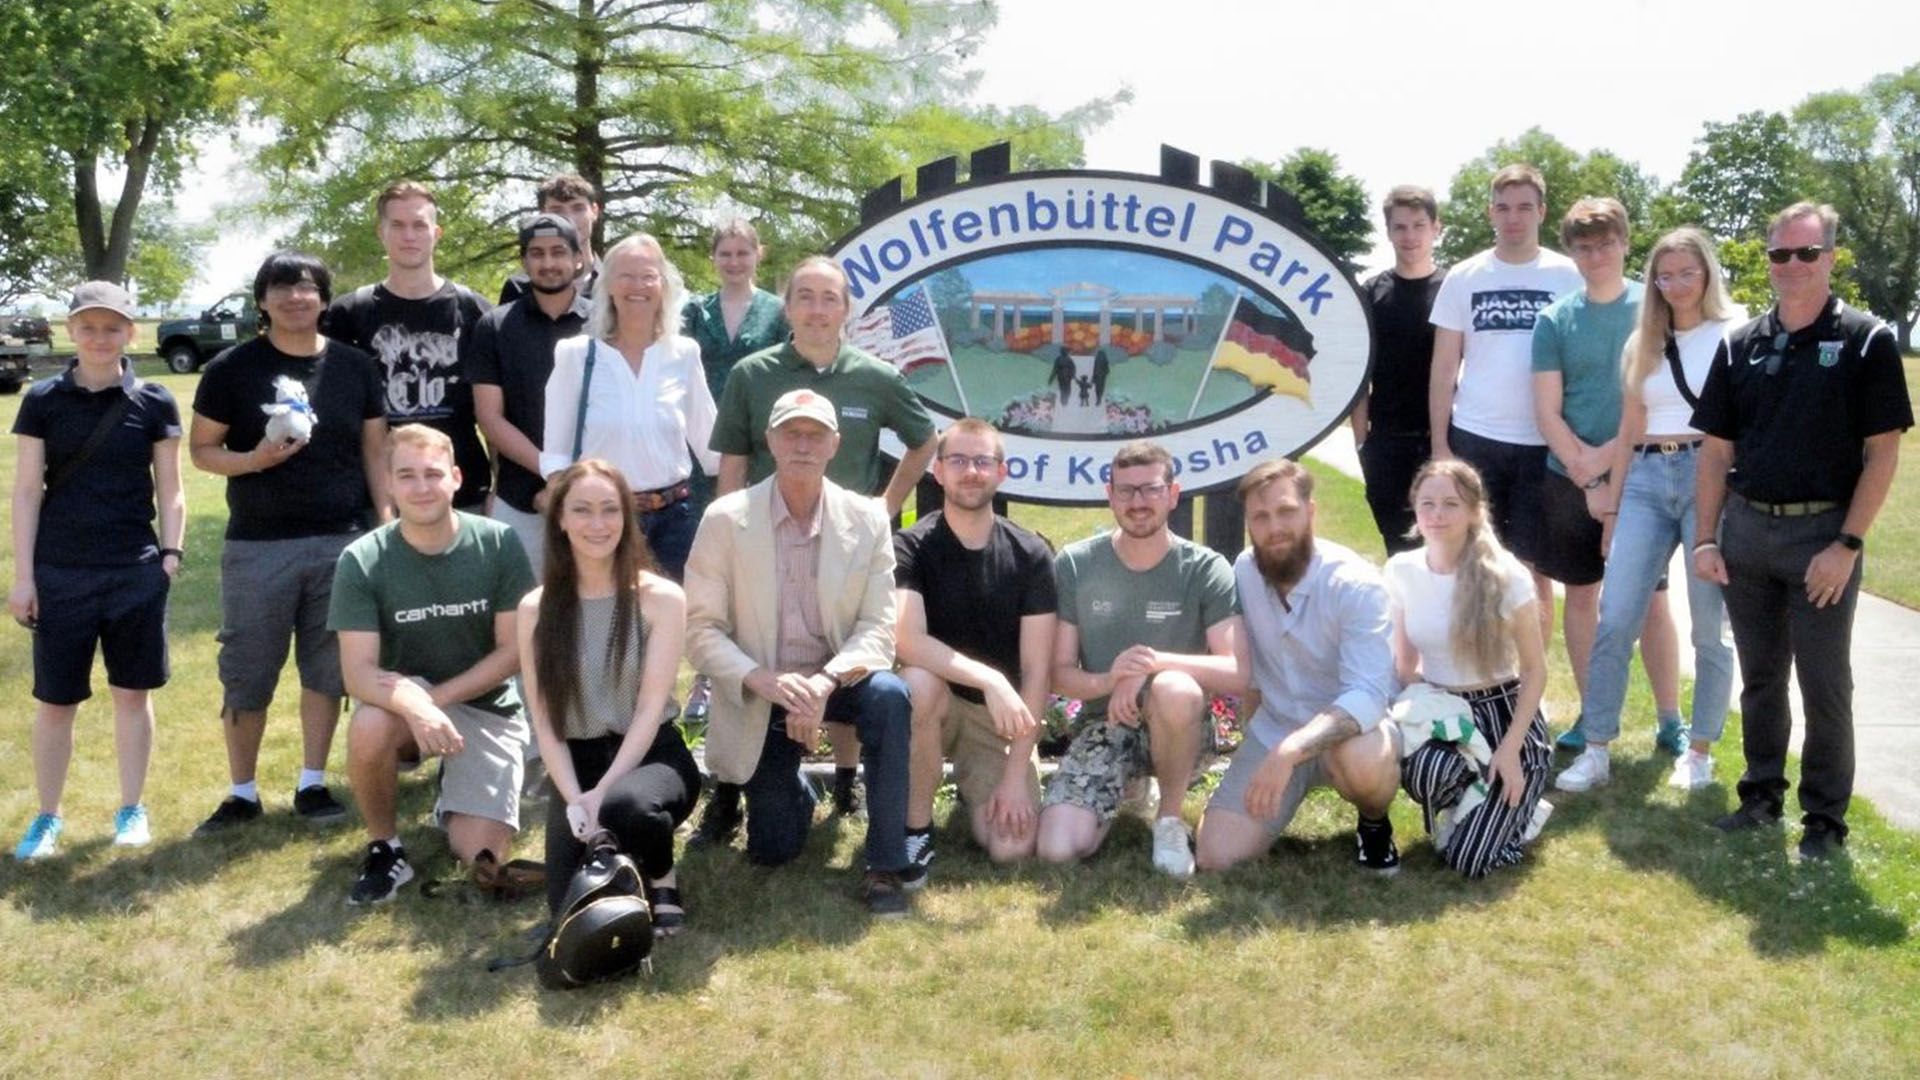 Rund 20 Männer und Frauen stehen und hocken zum Gruppenfoto neben einem Schild "Wolfenbüttel Park".